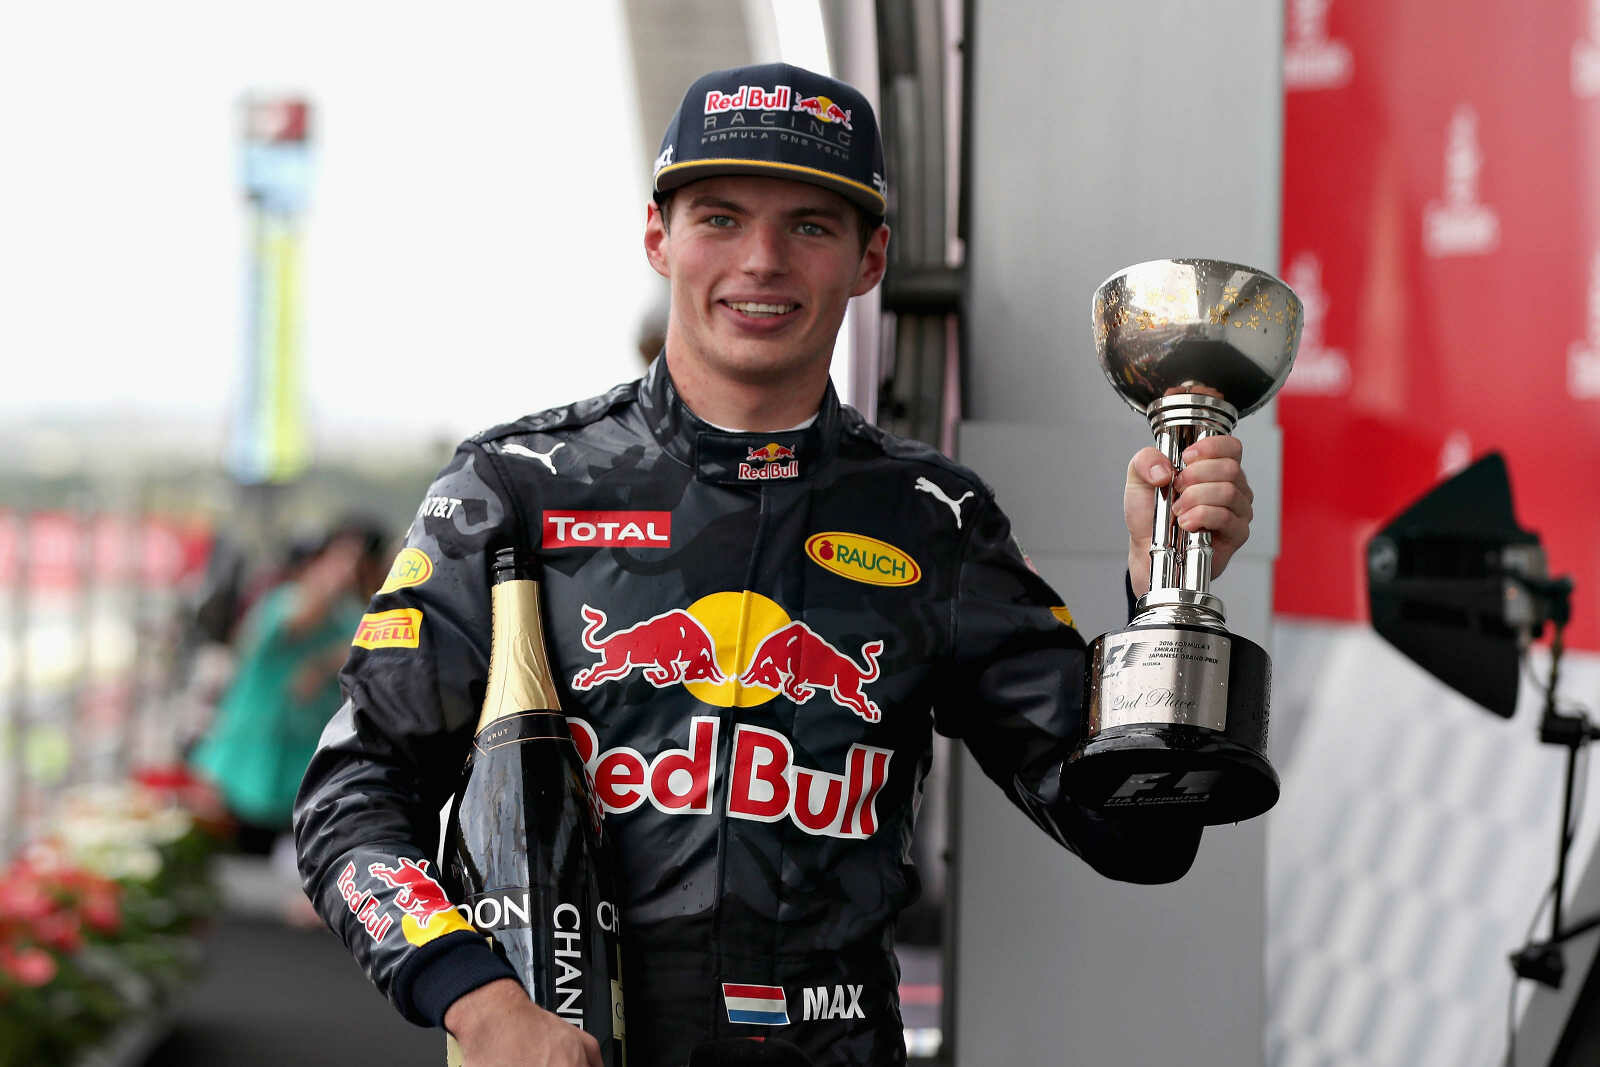 images_2016_F1_10_GP_Japan_Max_Verstappen_Red_Bull_Racing_F1_Grand_Prix_Japan_2016_podium